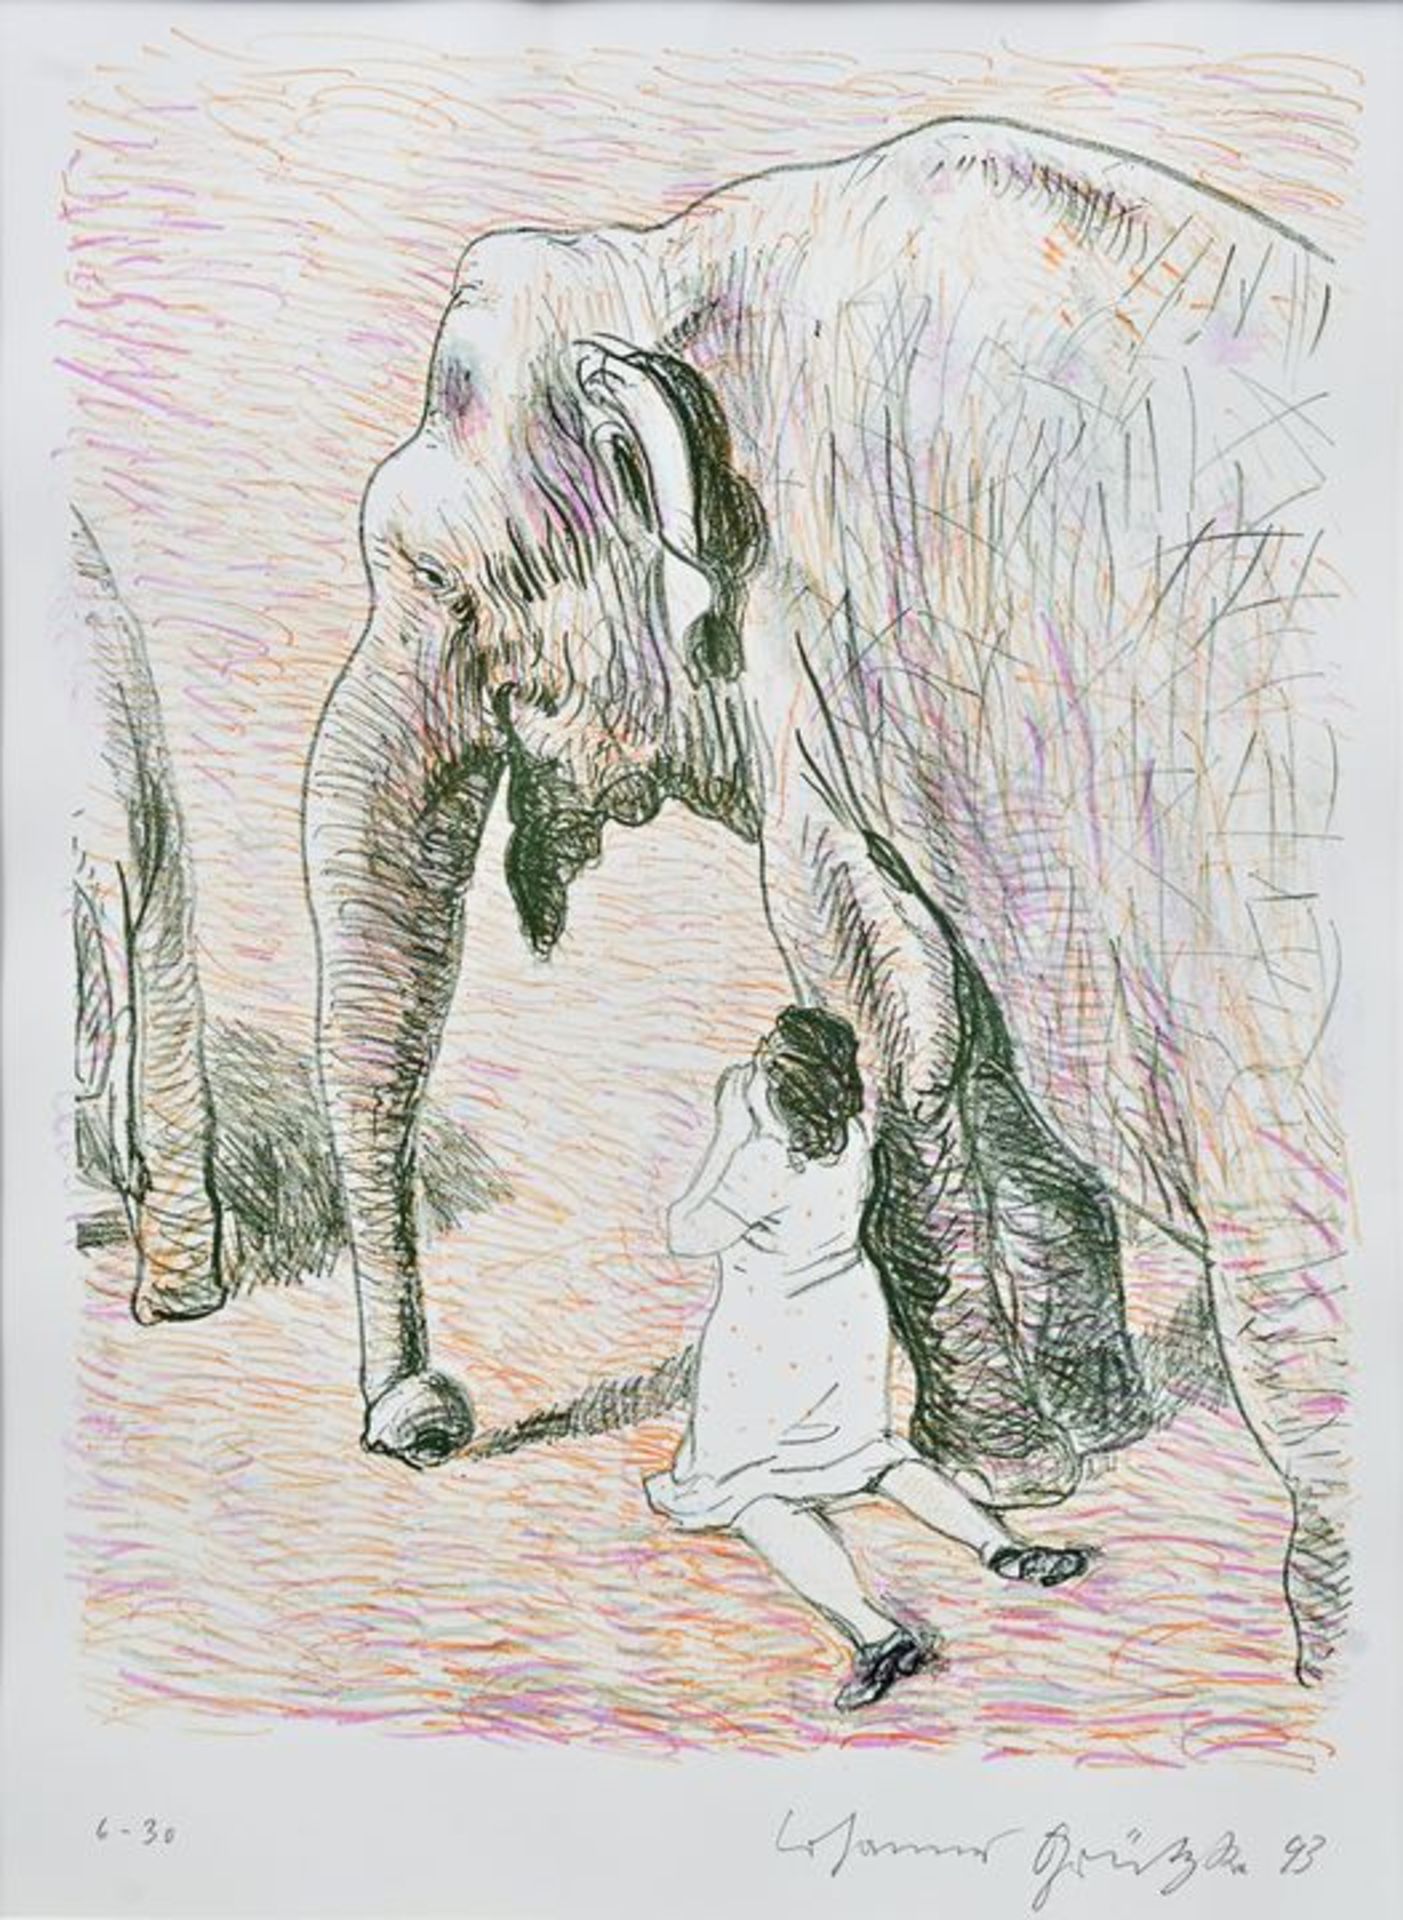 Am Elefant/ elephant